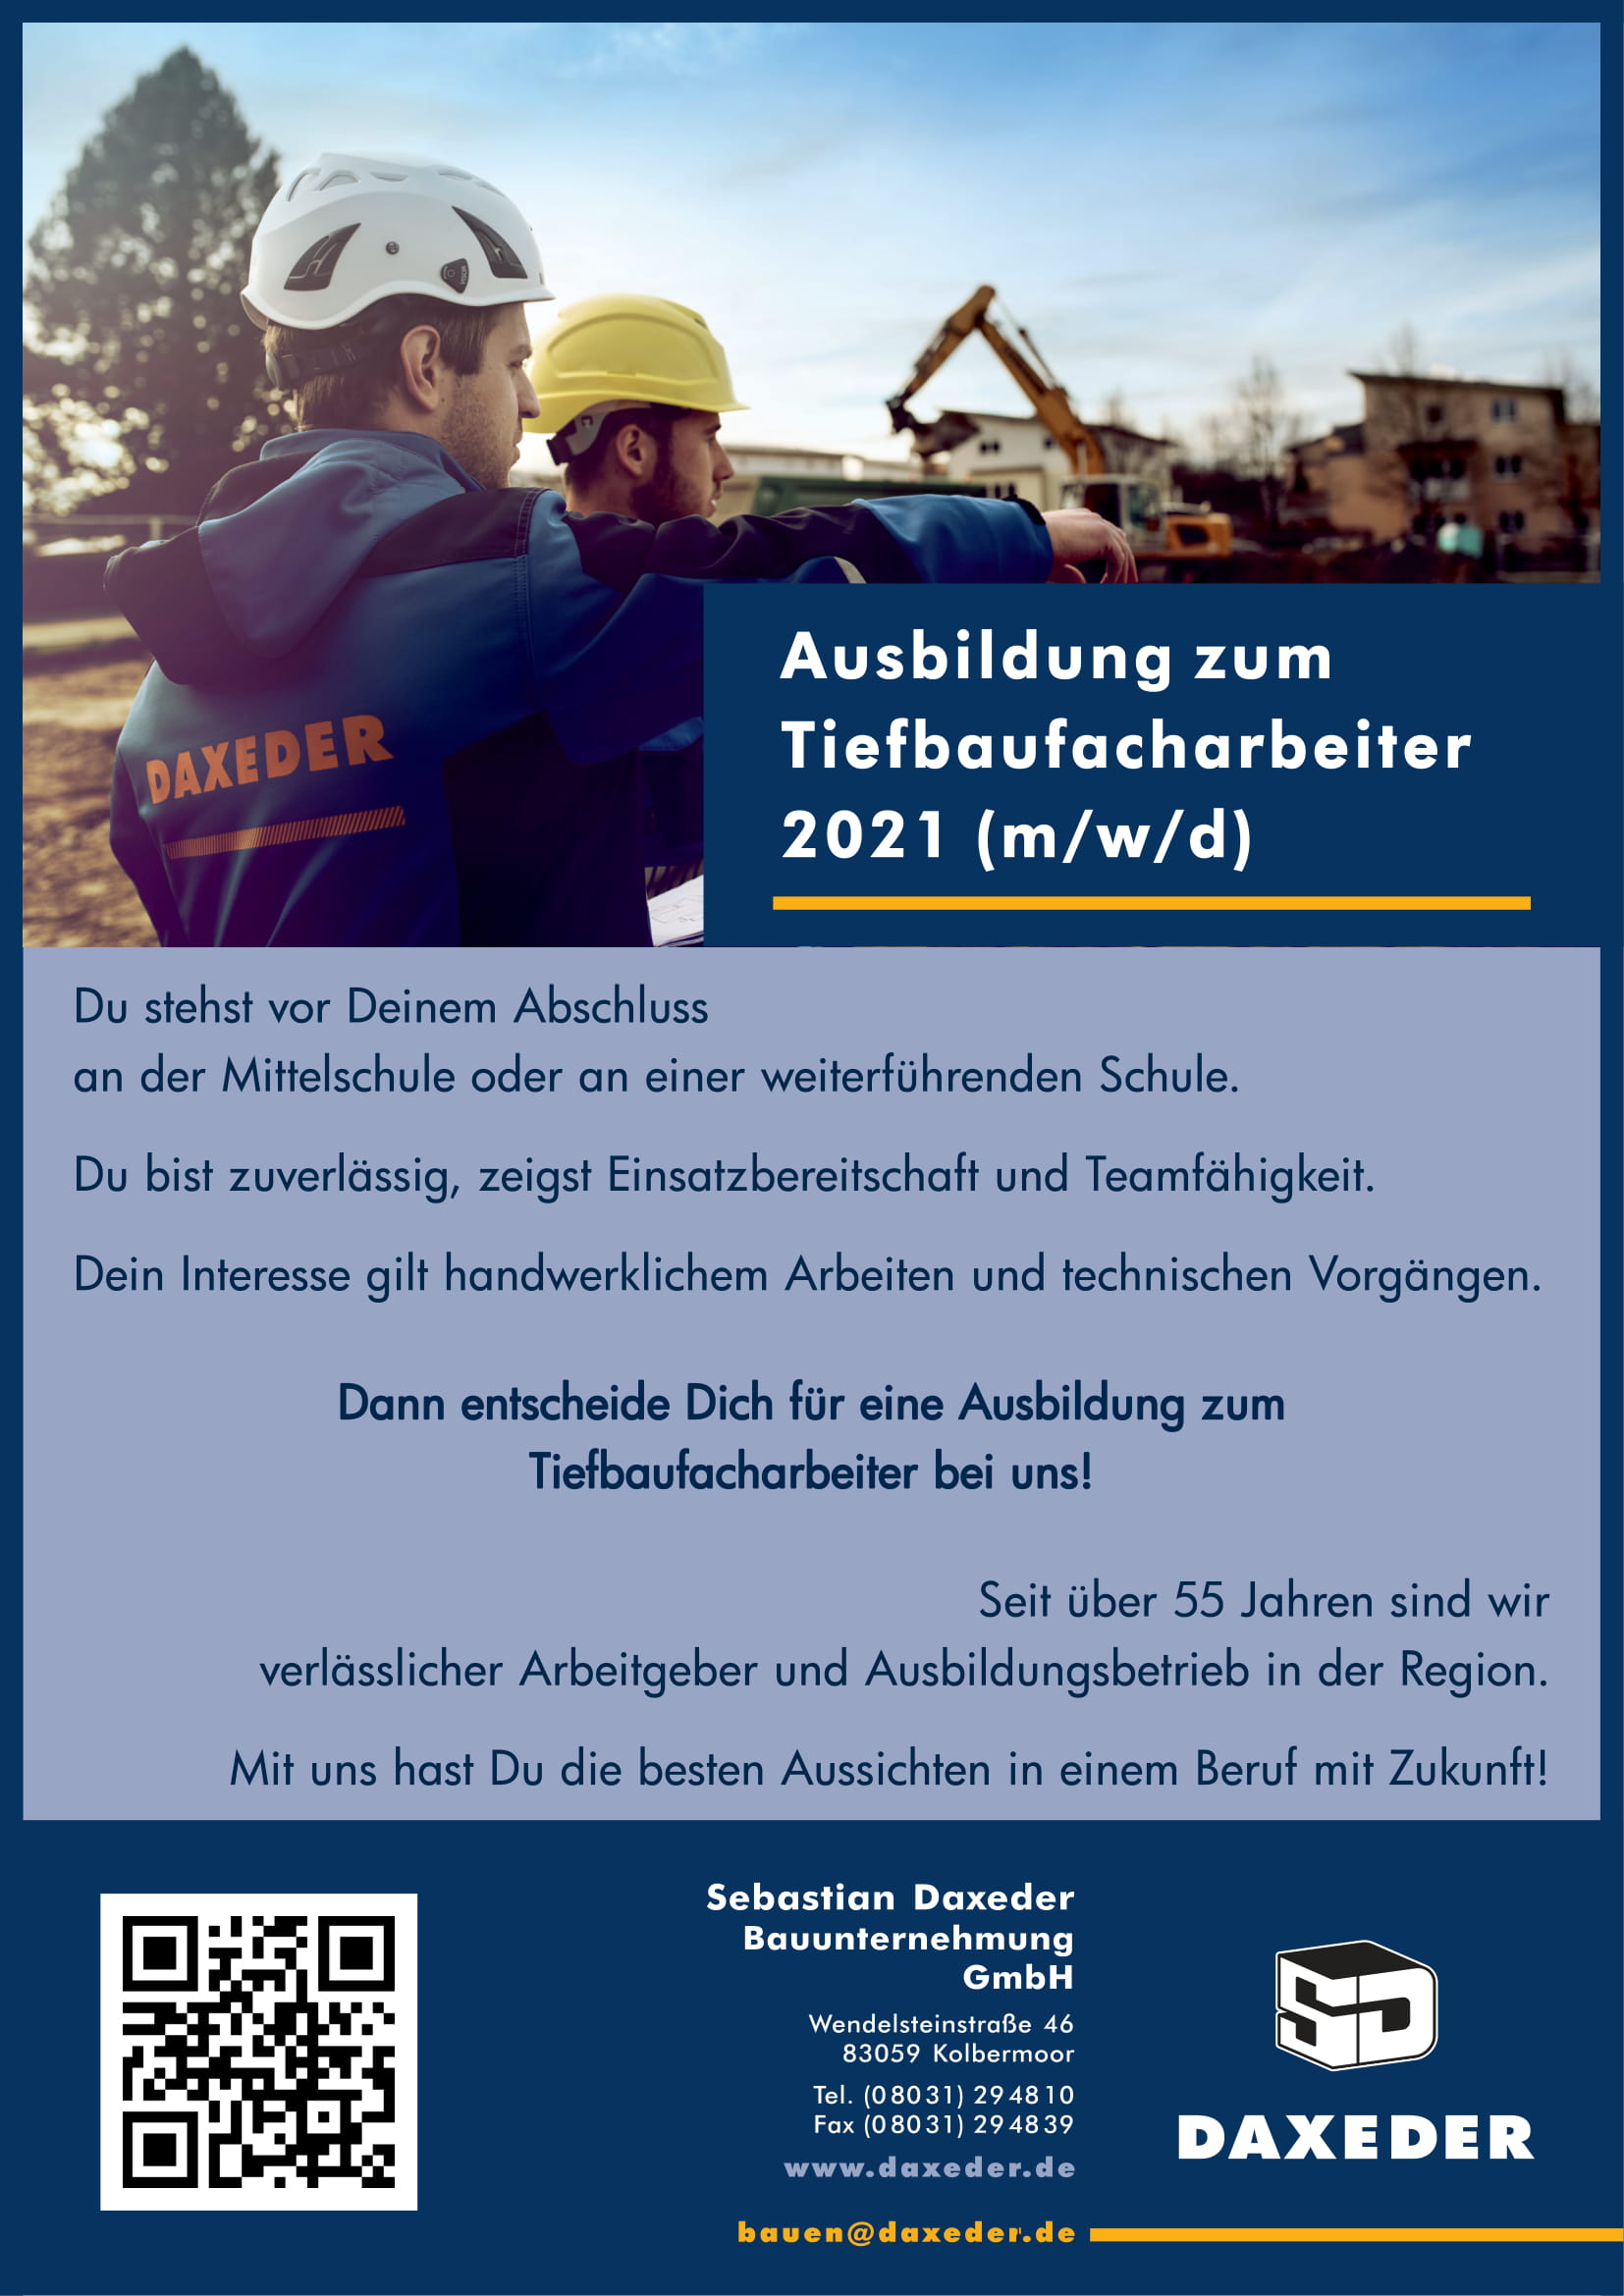 Sebastian Daxeder Bauunternehmung, Ausbildung, 2021, Tiefbaufacharbeiter, Kolbermoor, Rosenheim